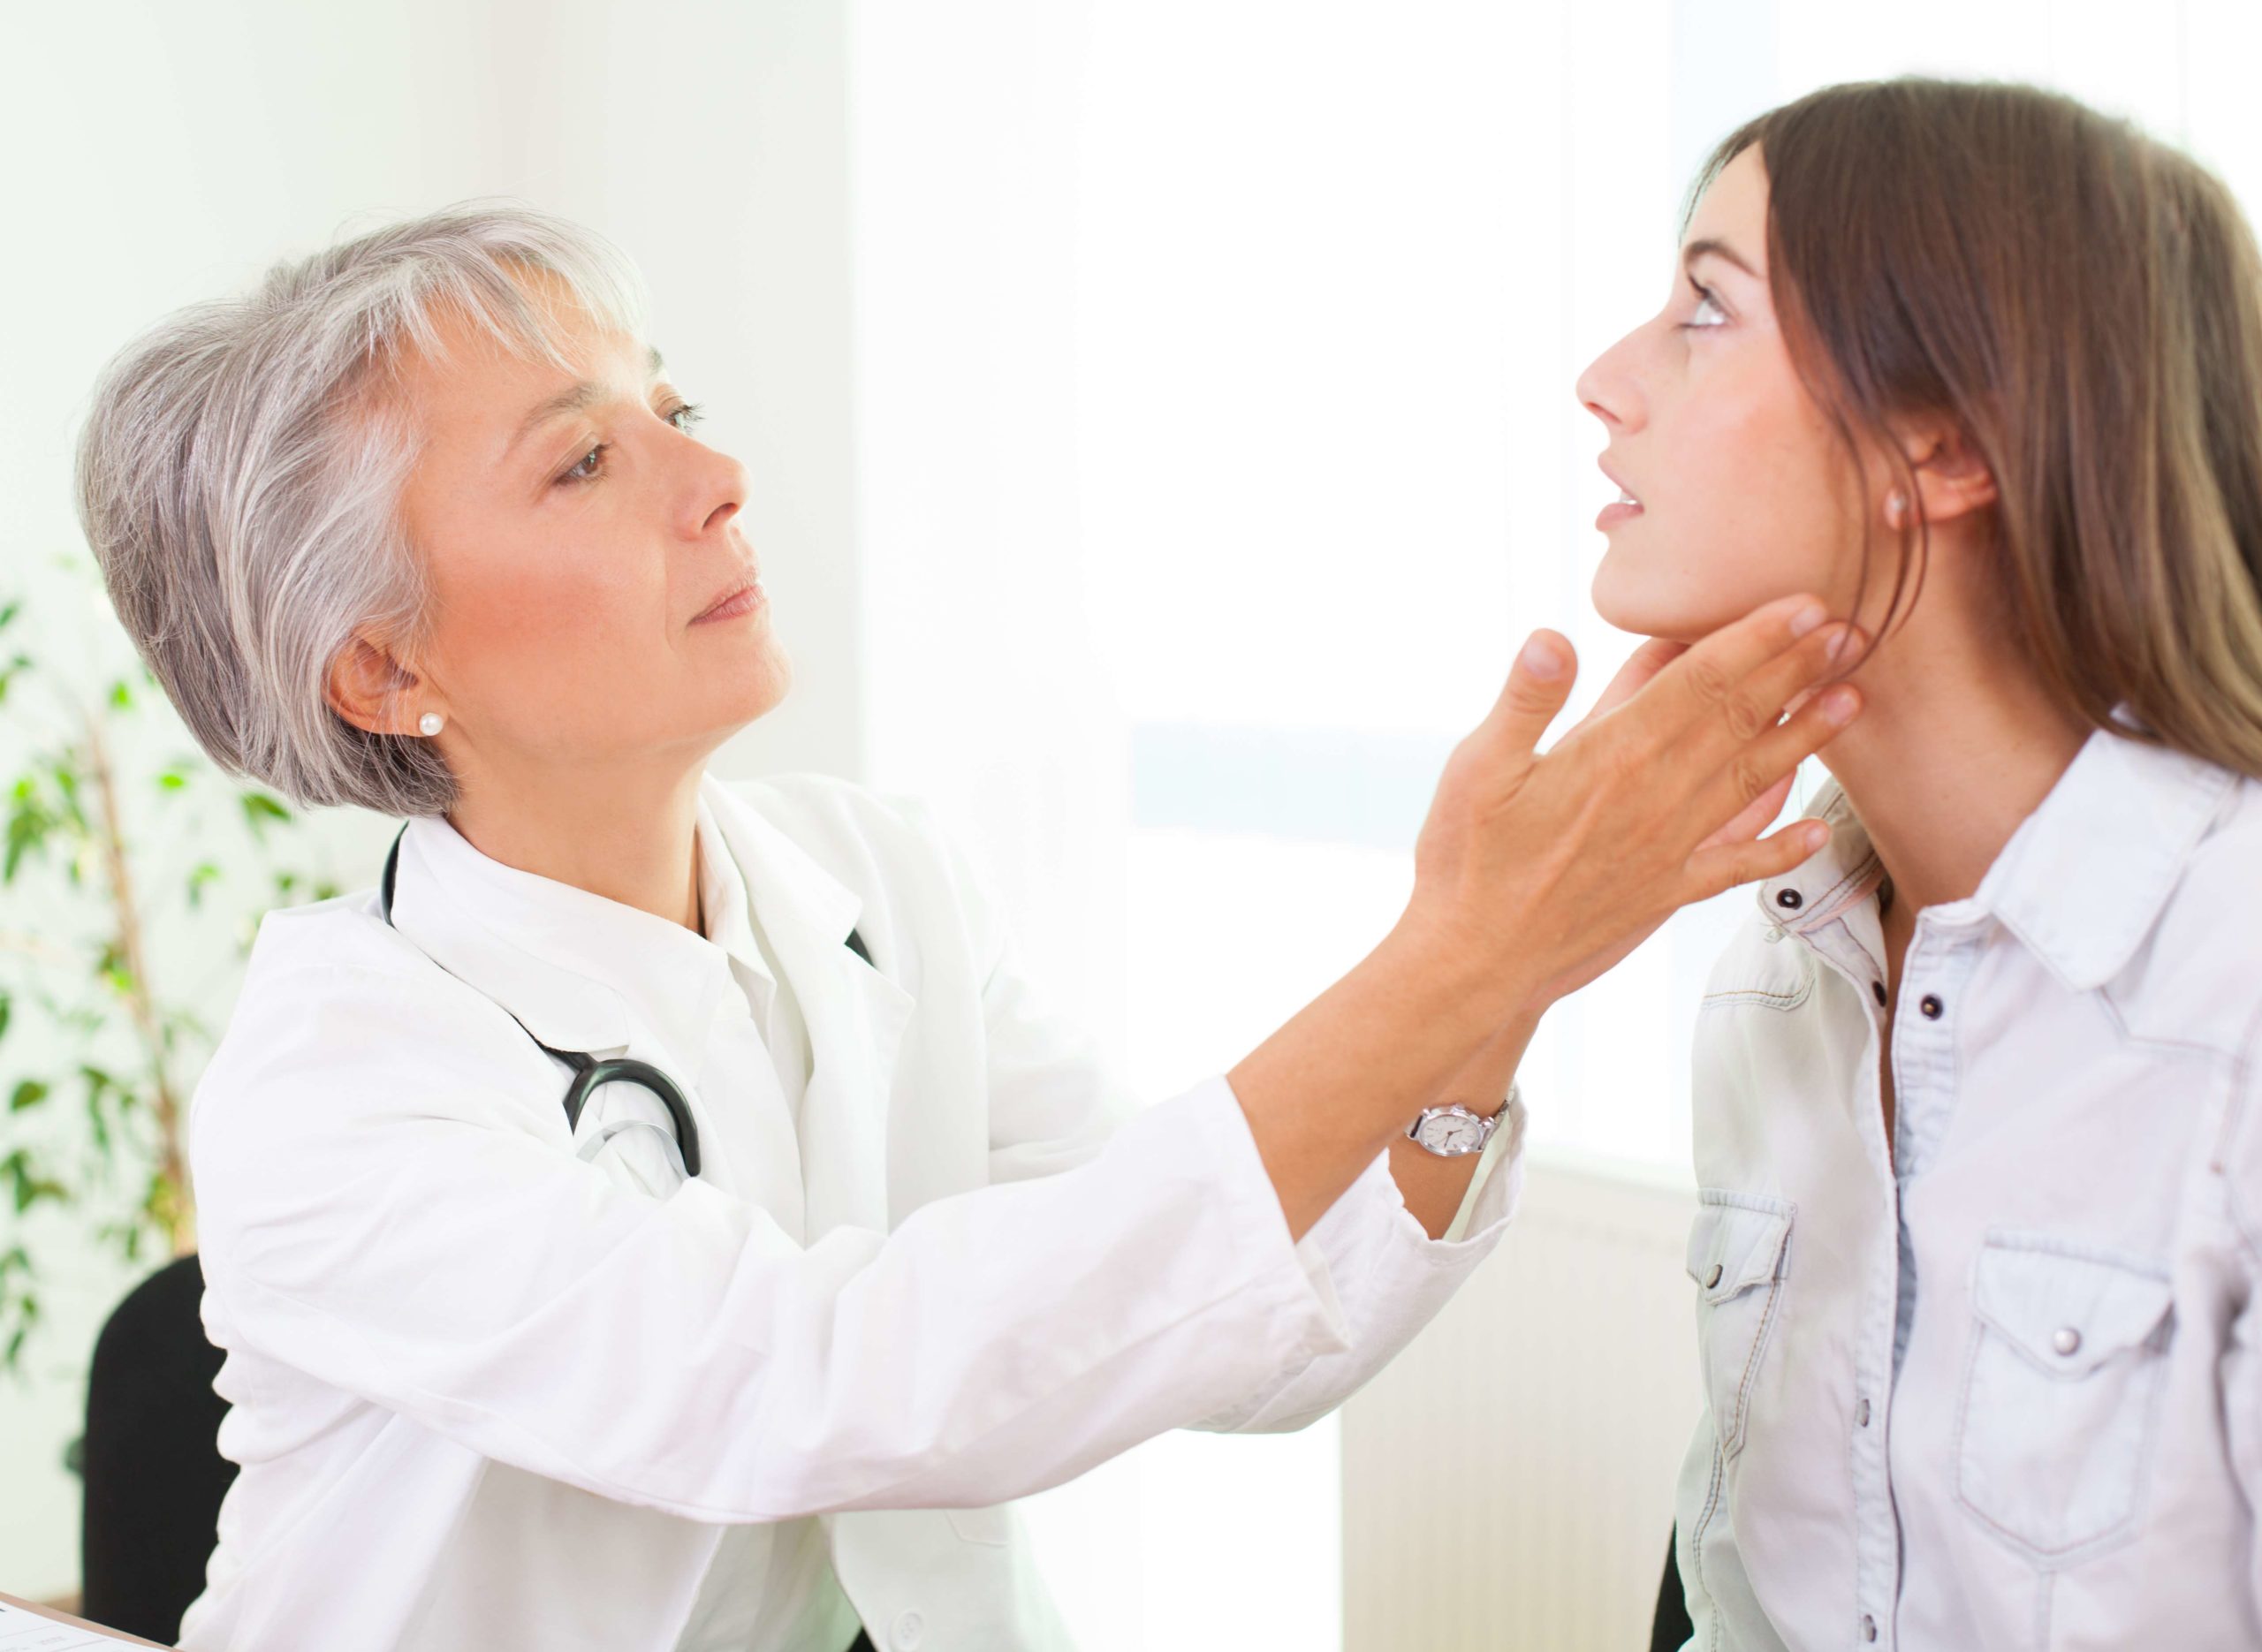 Терапии различных заболеваний. Щитовидная и врач. Щитовидная железа врач. Врач проверяет щитовидку. Врач проверяет щитовидную железу.